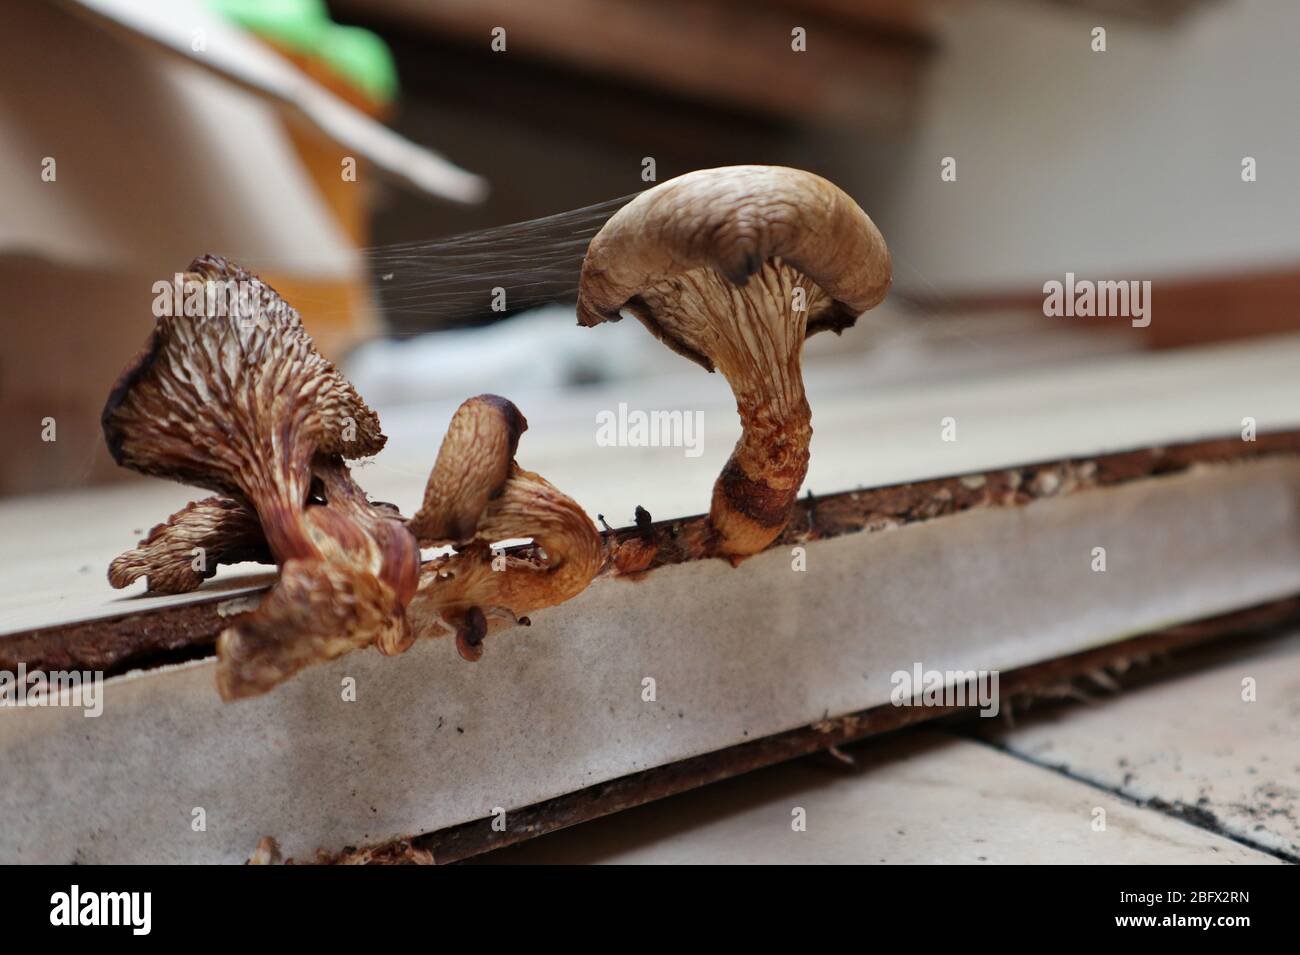 Funghi del sottotetto Foto de stock